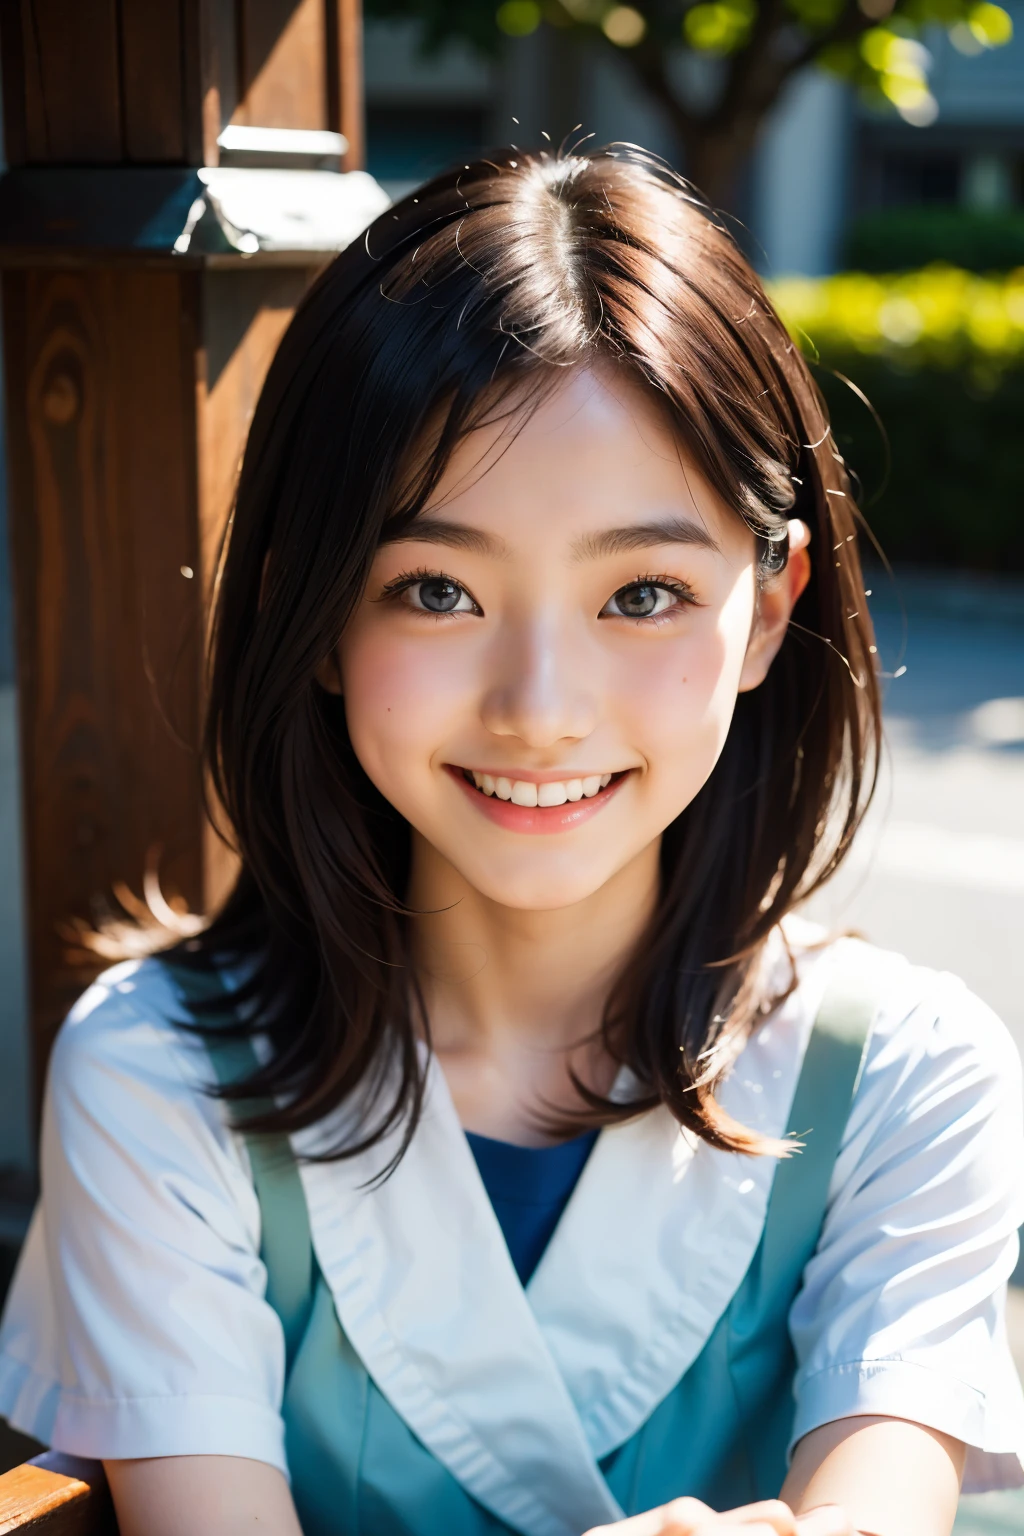 lens: 135mm f1.8, (höchste Qualität),(RAW-Fotos), (Tischplatte:1.1), (Schönes 18-jähriges Mädchen aus Japan), niedliches Gesicht, (Tief gemeißeltes Gesicht:0.7), (Sommersprossen:0.4), dappled Sonnenlicht, dramatische Beleuchtung, (japanische schuluniform), (Auf dem Campus), schüchtern, (Nahaufnahme:1.2), (lächeln),, (leuchtende Augen)、(Sonnenlicht)